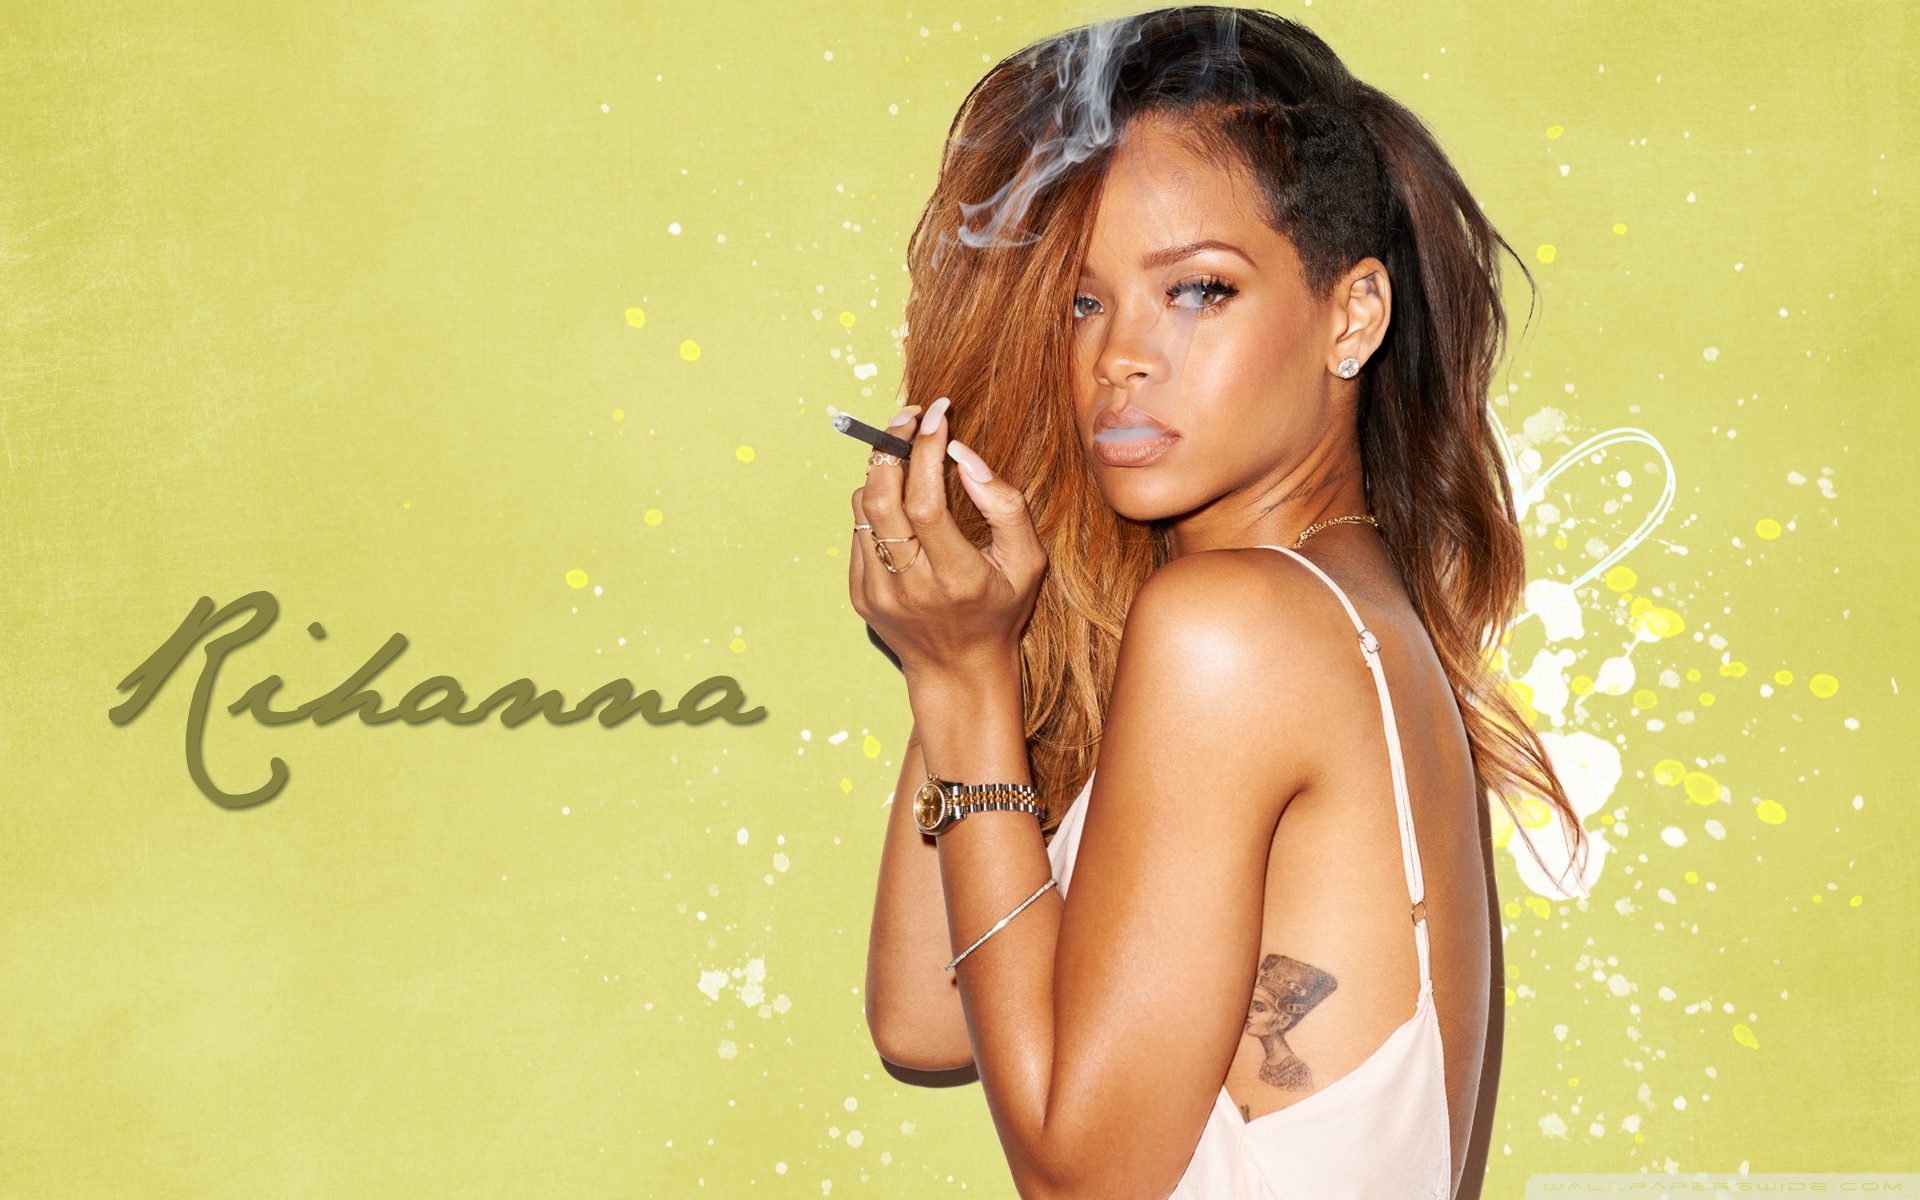 WallpapersWide com | Rihanna HD Desktop Wallpapers for Widescreen